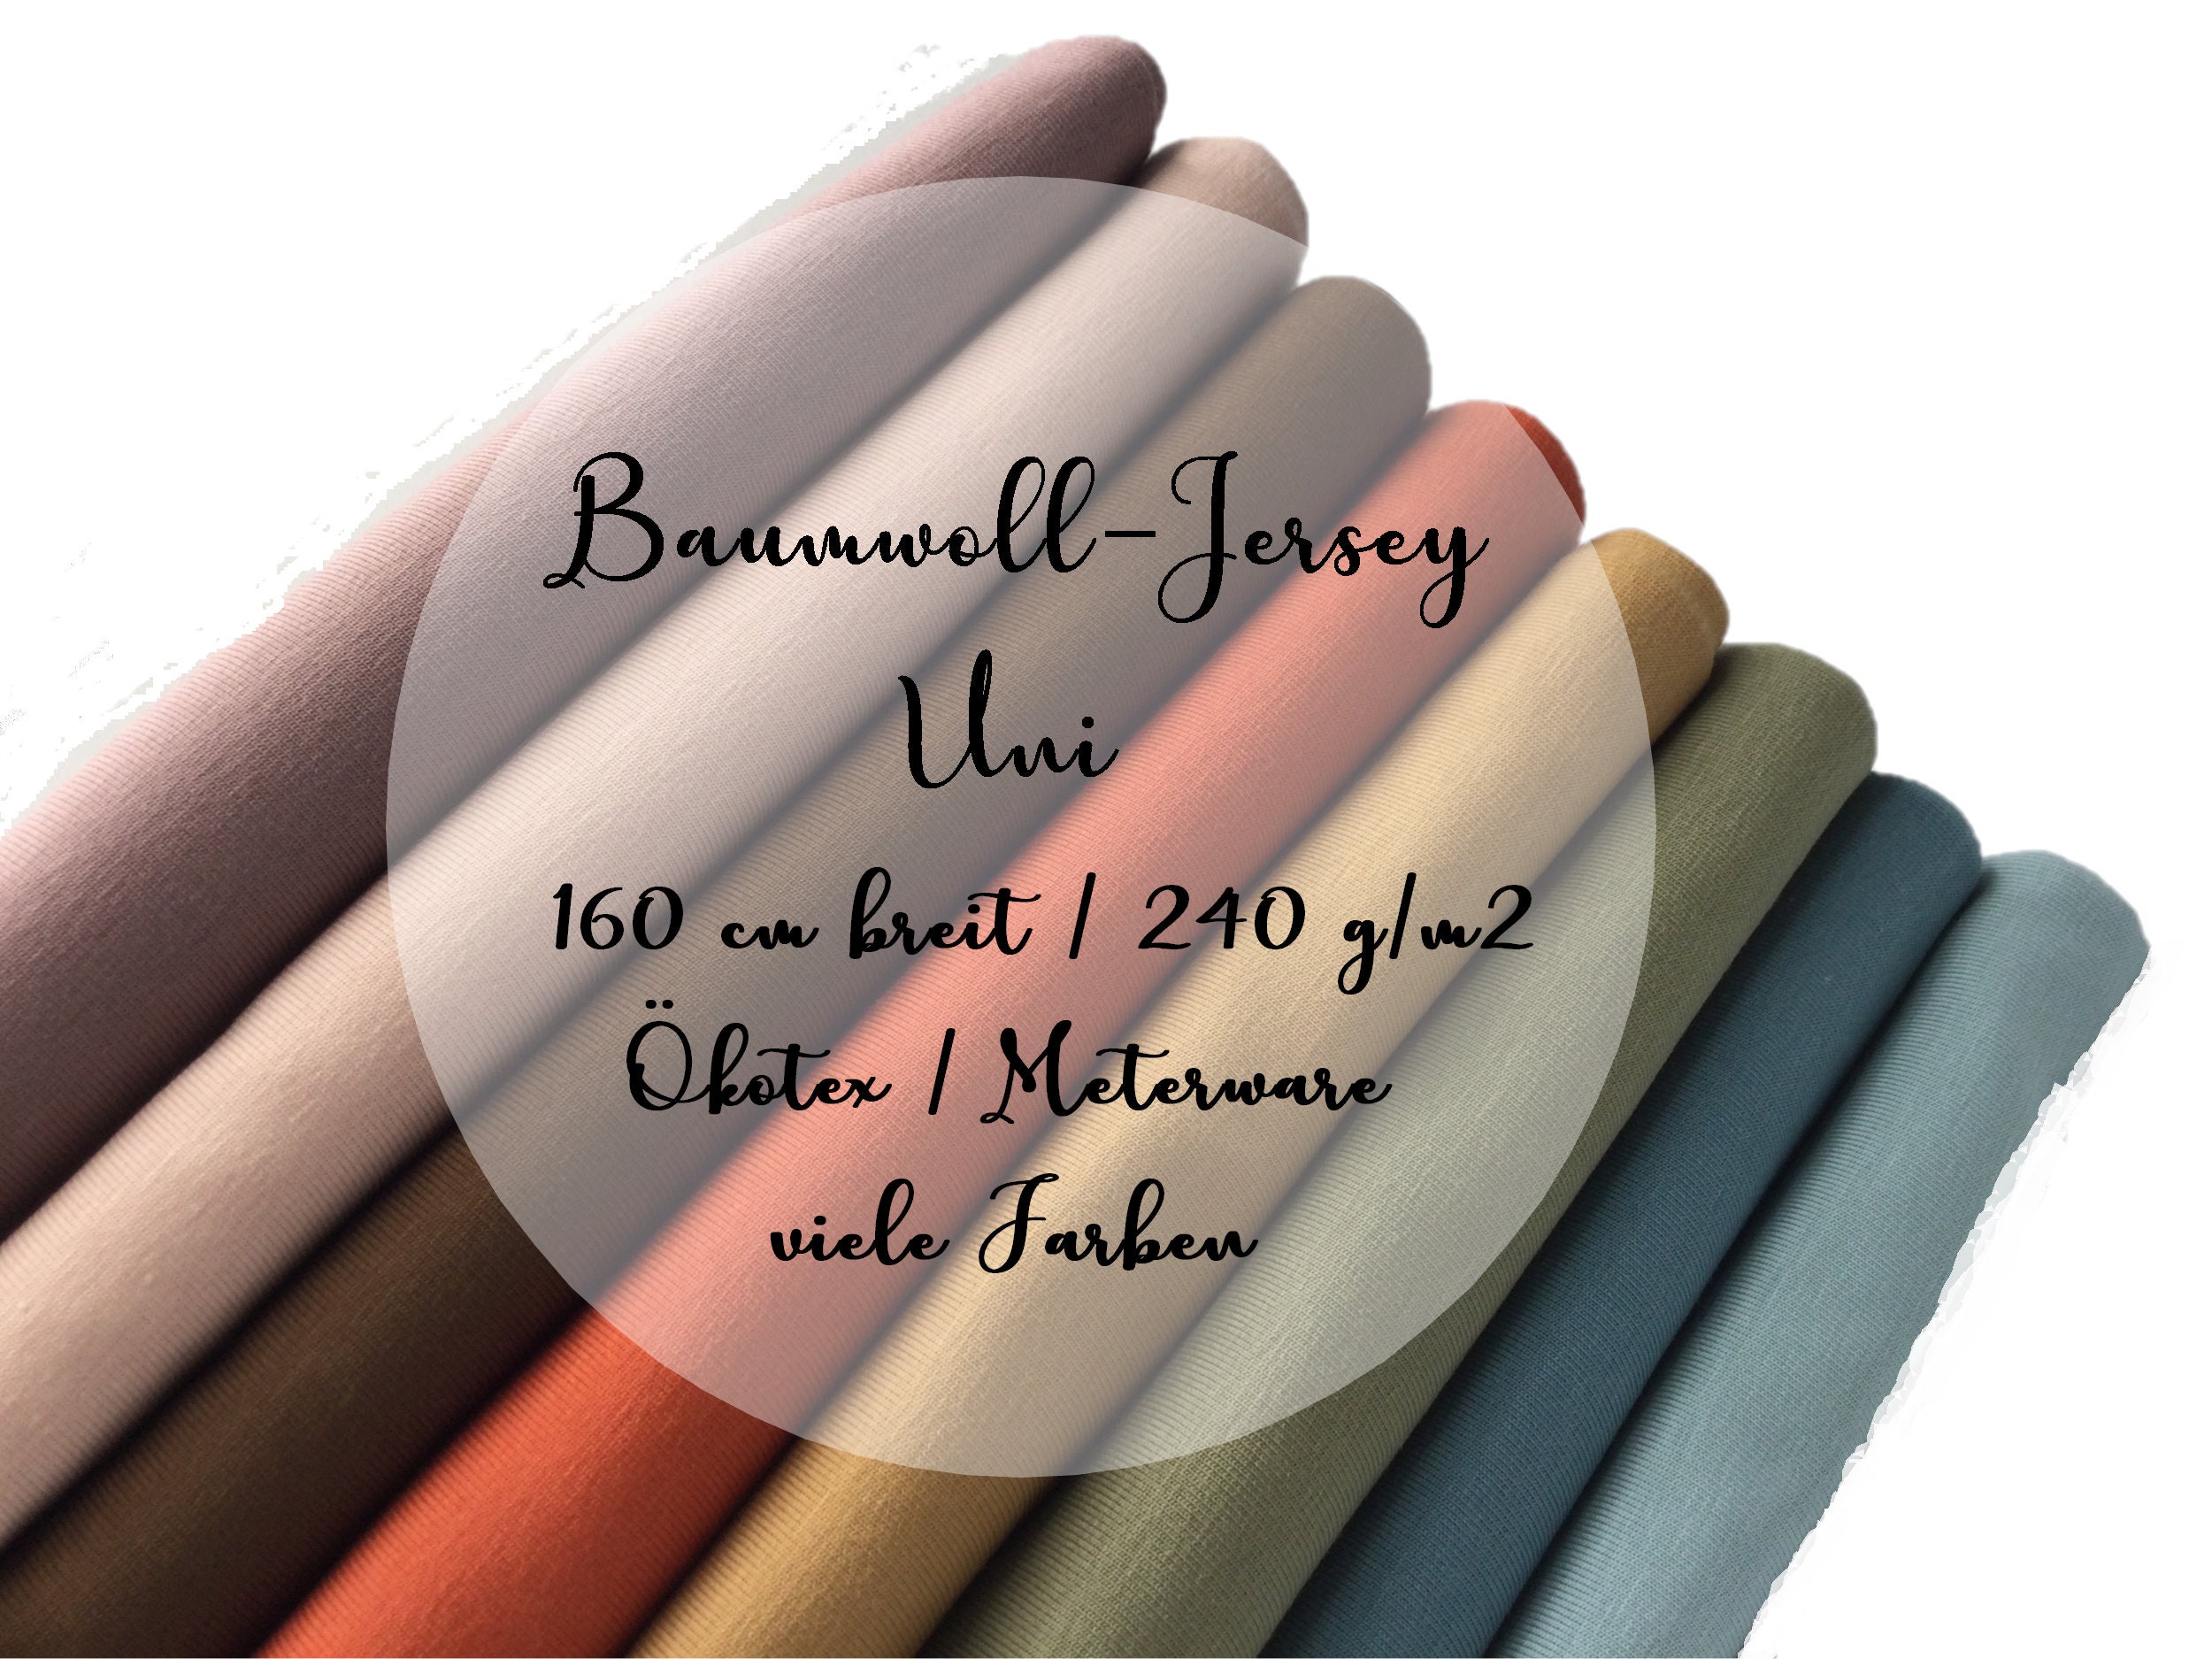 Farben in Jersey, Breit - Uni G/m2 India Ökotex Online Baumwolljersey 160 Buy Viele Etsy Cm 240